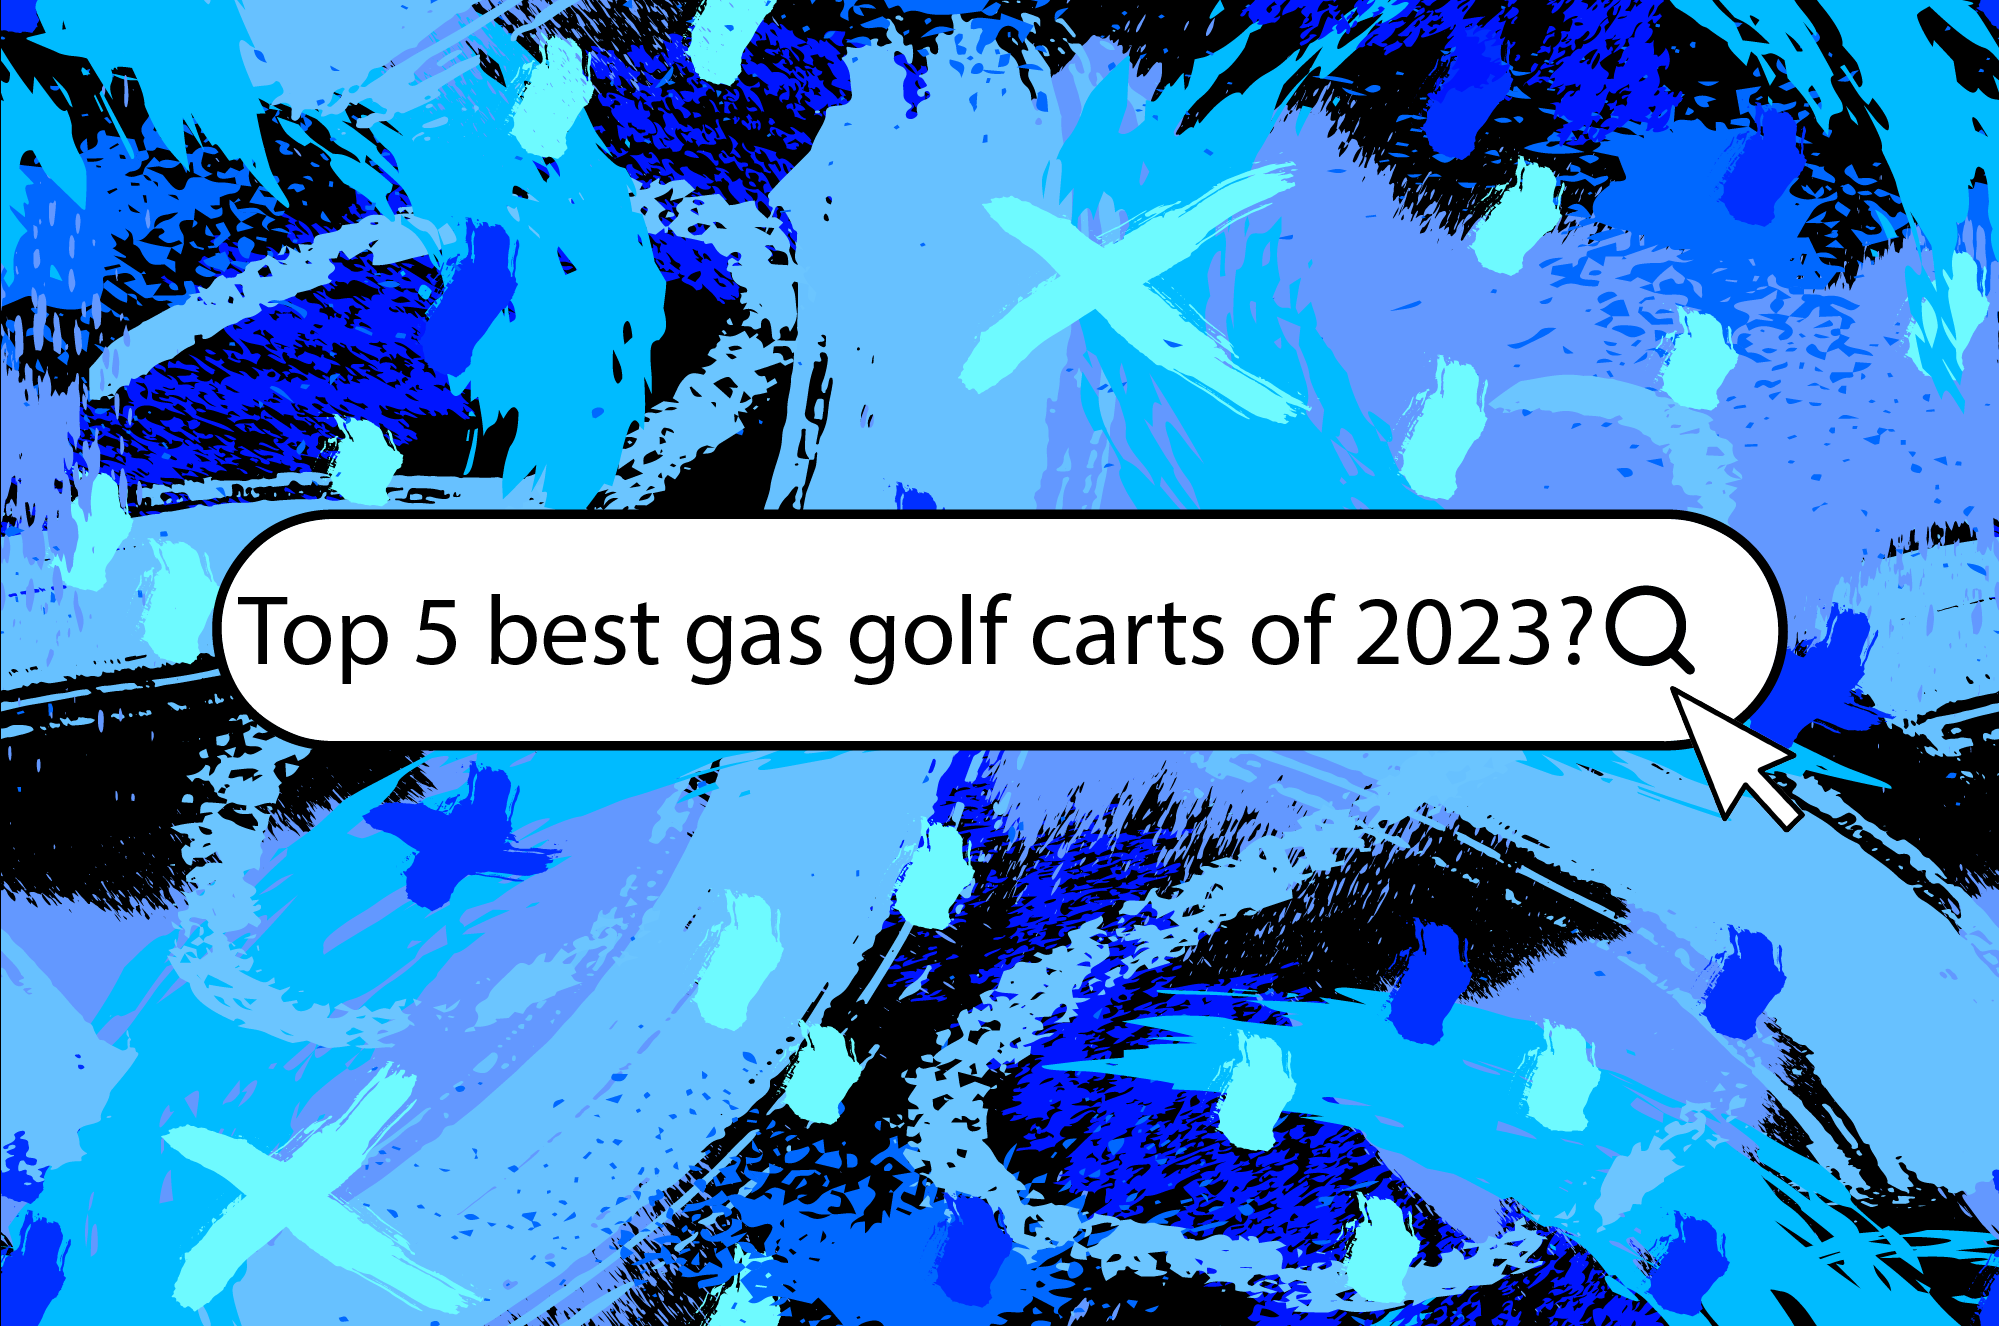 Top 5 best gas golf carts 2023